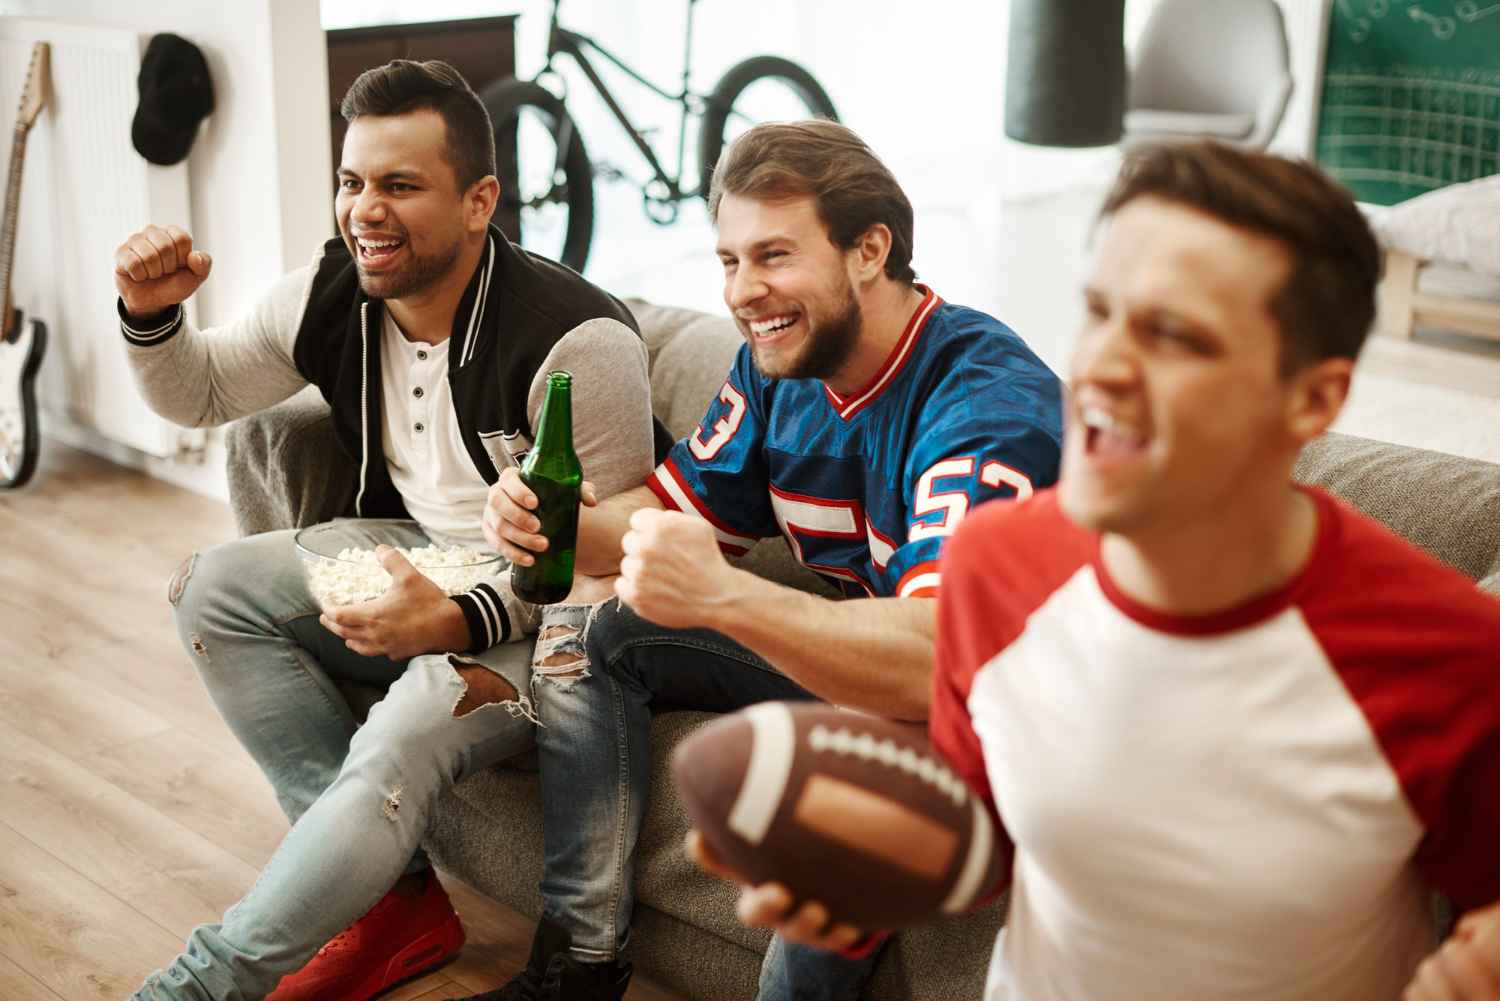 Assistir a programas de esportes na TV vai além de uma mera diversão, pois lhe permite sentir a adrenalina de assisti-los de casa.